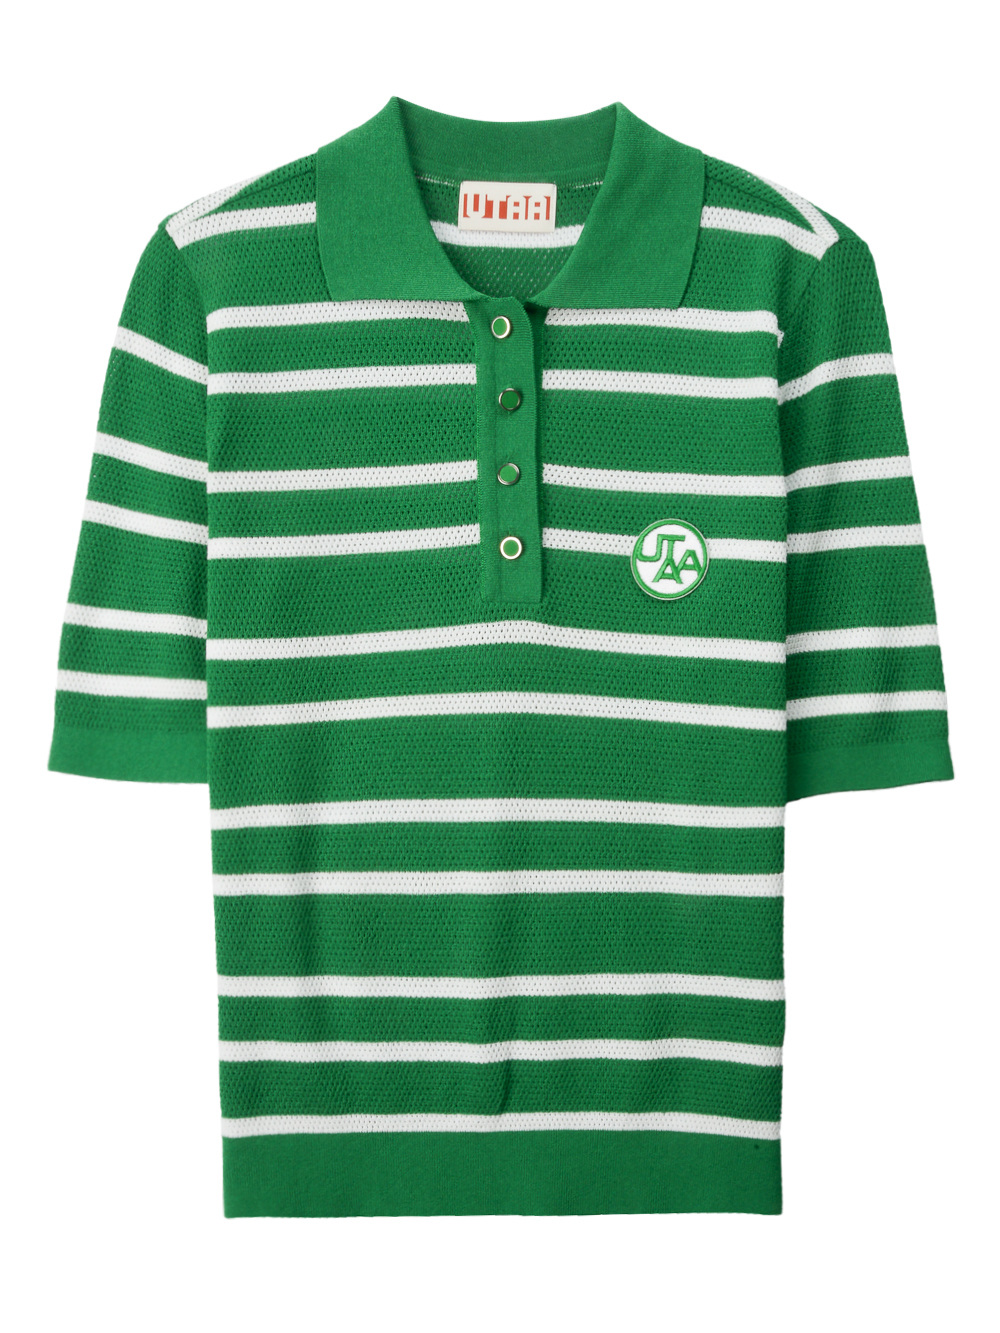 UTAA Putt Stripe Knit PK T-Shirts : Women&#039;s Green (UC2KTF255GN)